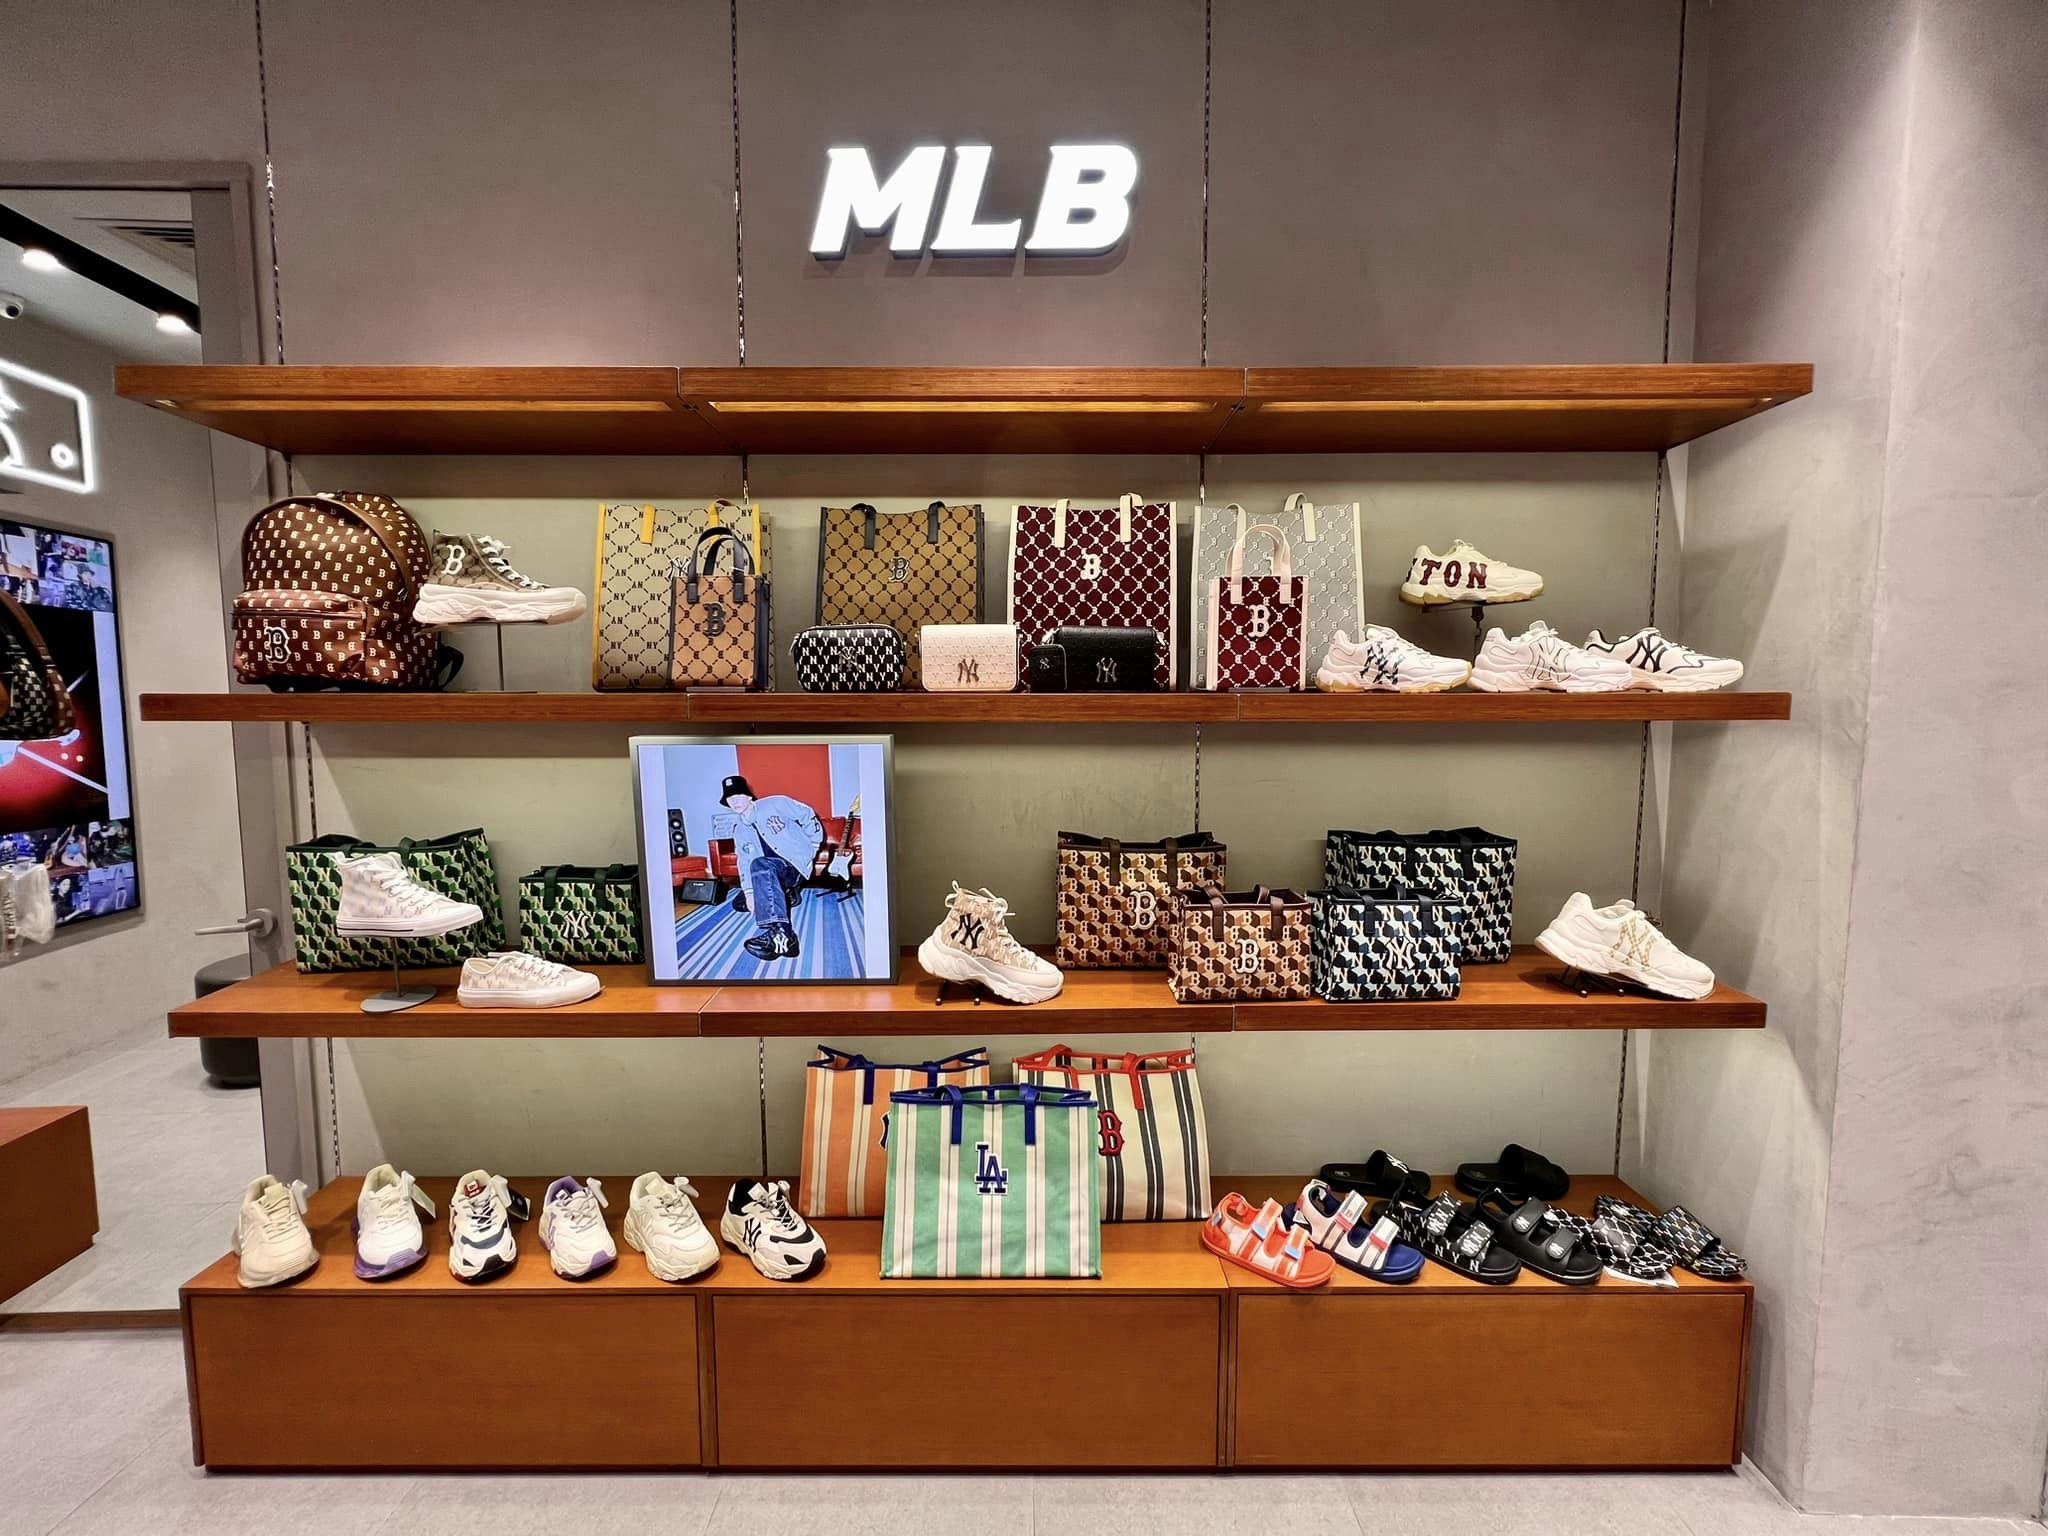 Thương hiệu MLB ra mắt cửa hàng đầu tiên tại Thành phố đáng sống nhất  Đà  Nẵng  PHONG CÁCH SỐNG CỦA ĐÀN ÔNG  MENANDLIFEVN